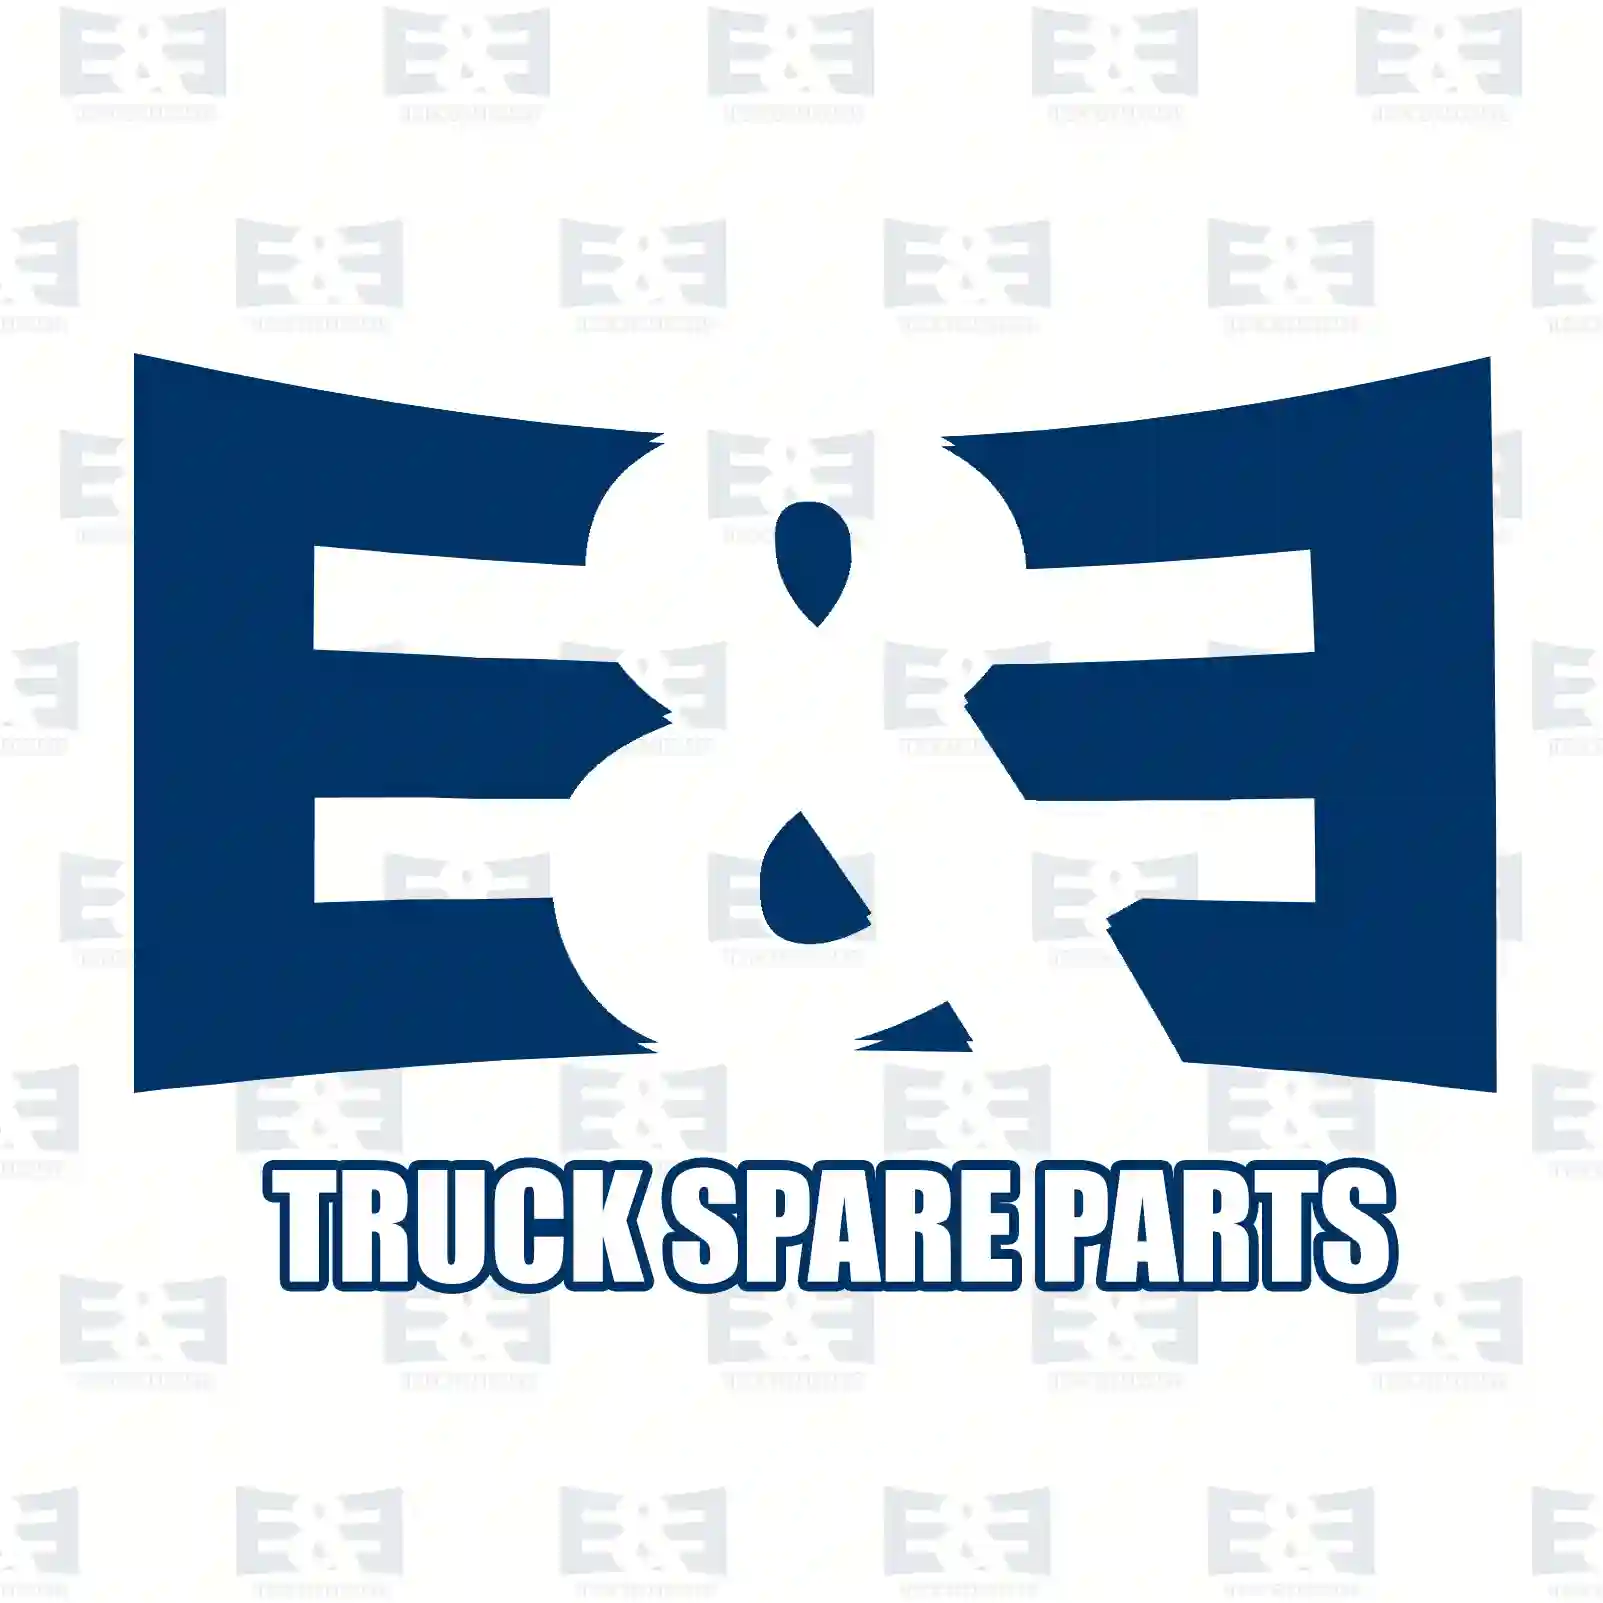 O-ring, 2E2285060, 0169978248, 3469970445, , ||  2E2285060 E&E Truck Spare Parts | Truck Spare Parts, Auotomotive Spare Parts O-ring, 2E2285060, 0169978248, 3469970445, , ||  2E2285060 E&E Truck Spare Parts | Truck Spare Parts, Auotomotive Spare Parts